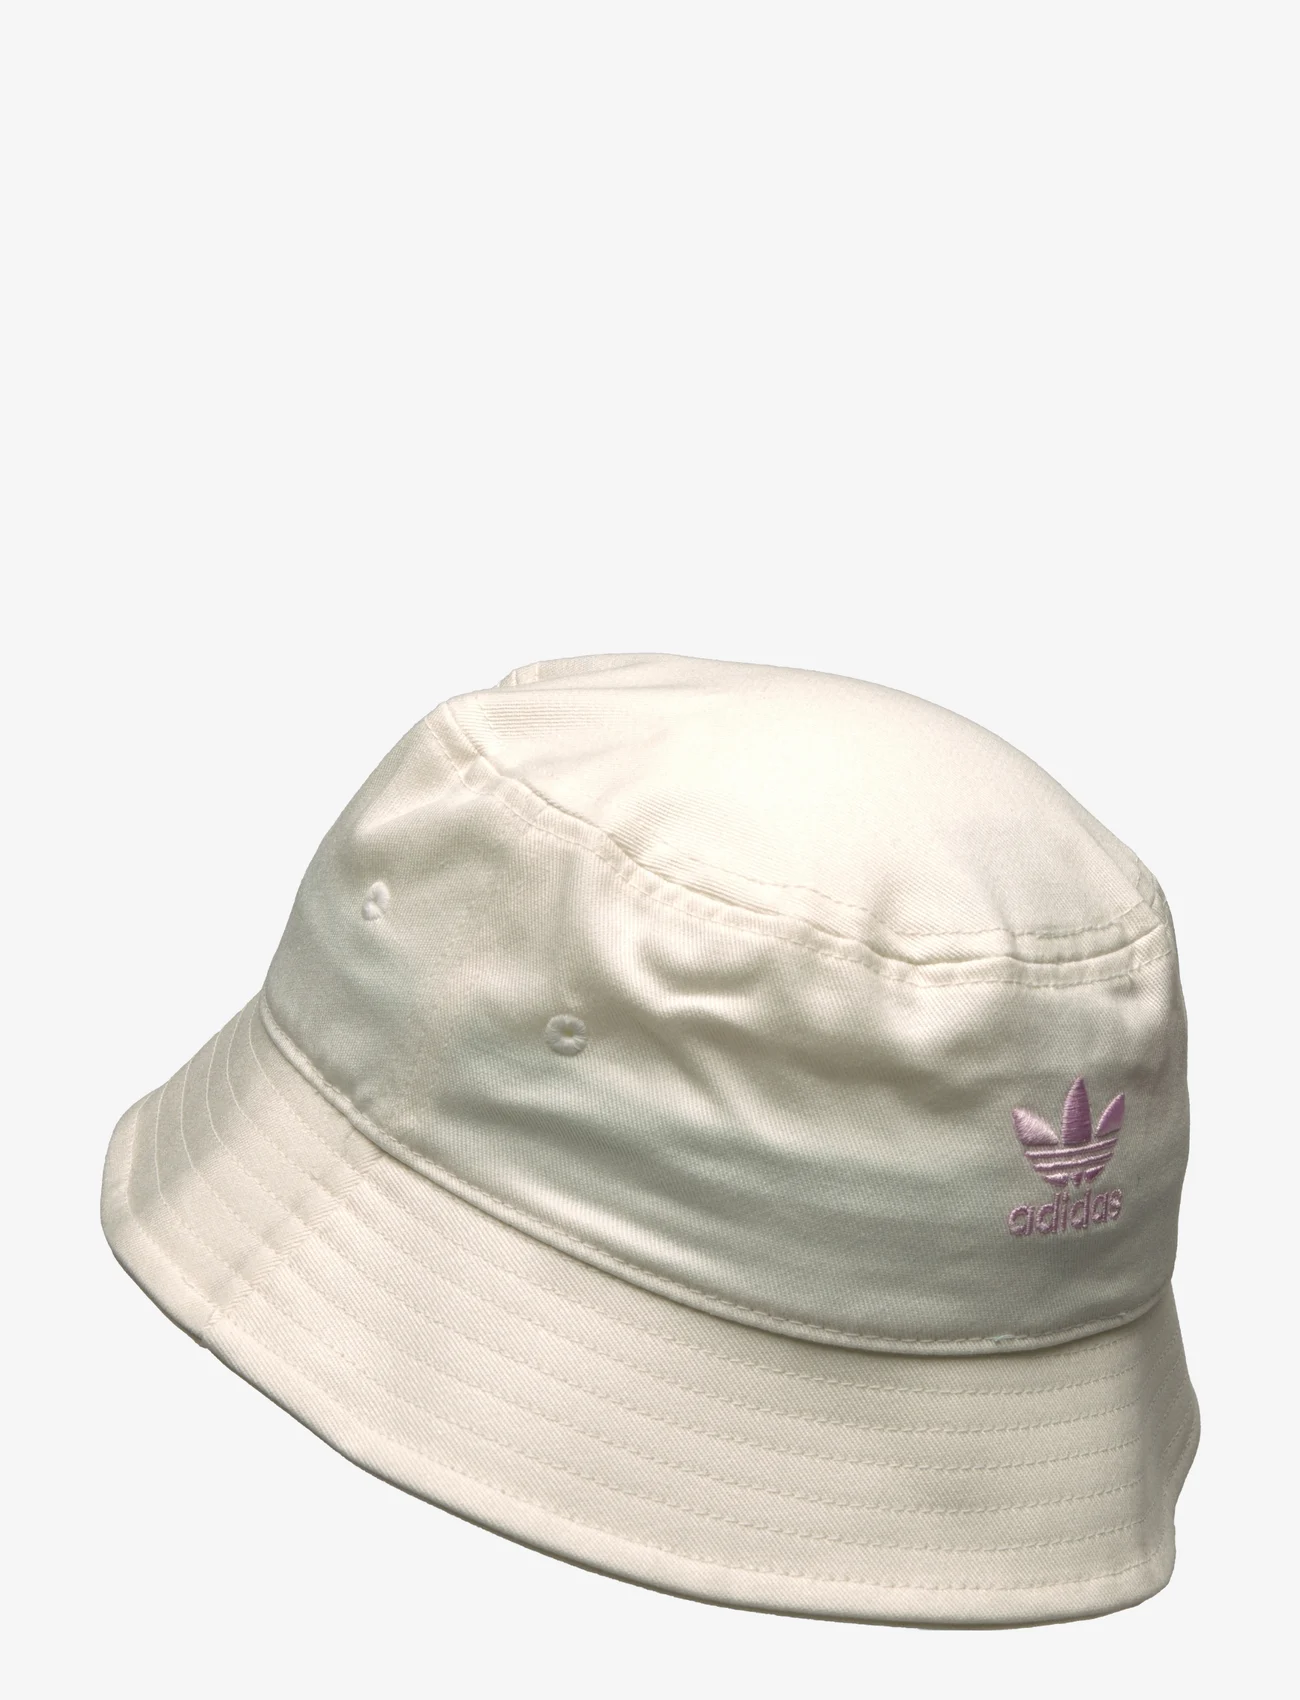 adidas Originals - YOUTH HAT - kapelusze - owhite - 1